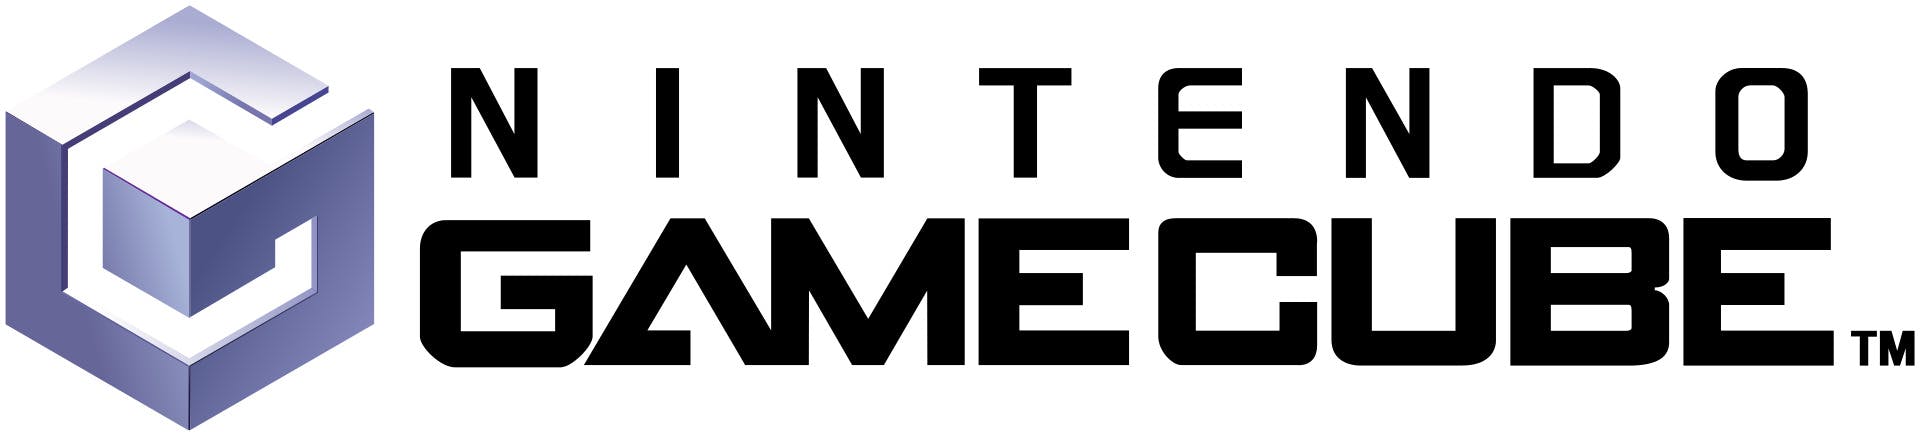  diseño de logos corporativos - nintendo gamecube